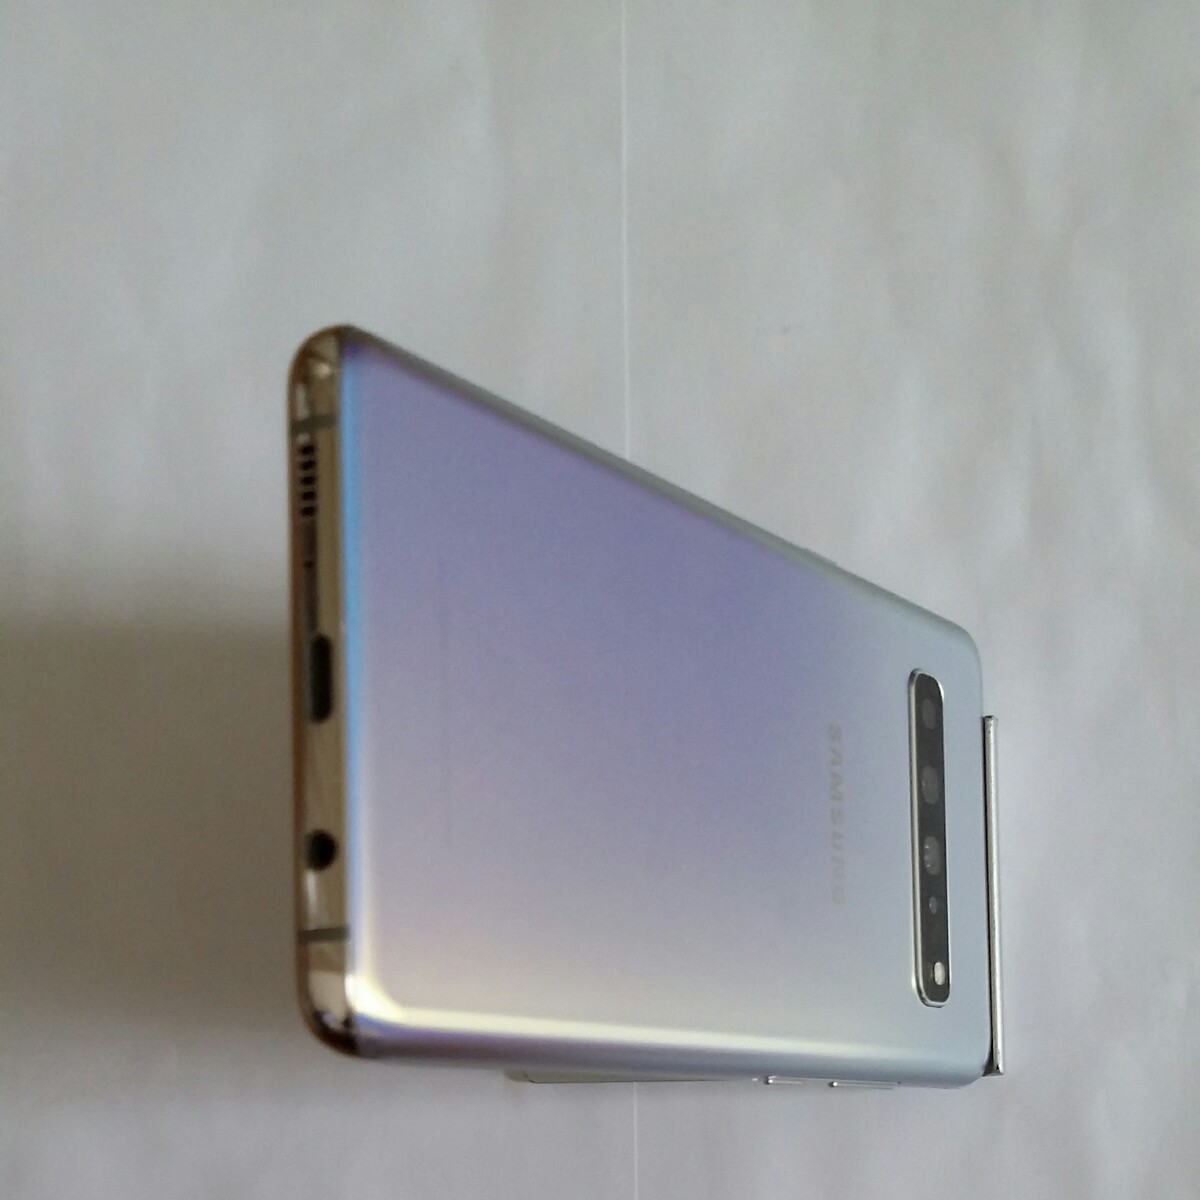 スマートフォン/携帯電話 スマートフォン本体 galaxy S10 5G SM-G977N simフリー クラウンシルバー色 韓国版本体中古美品